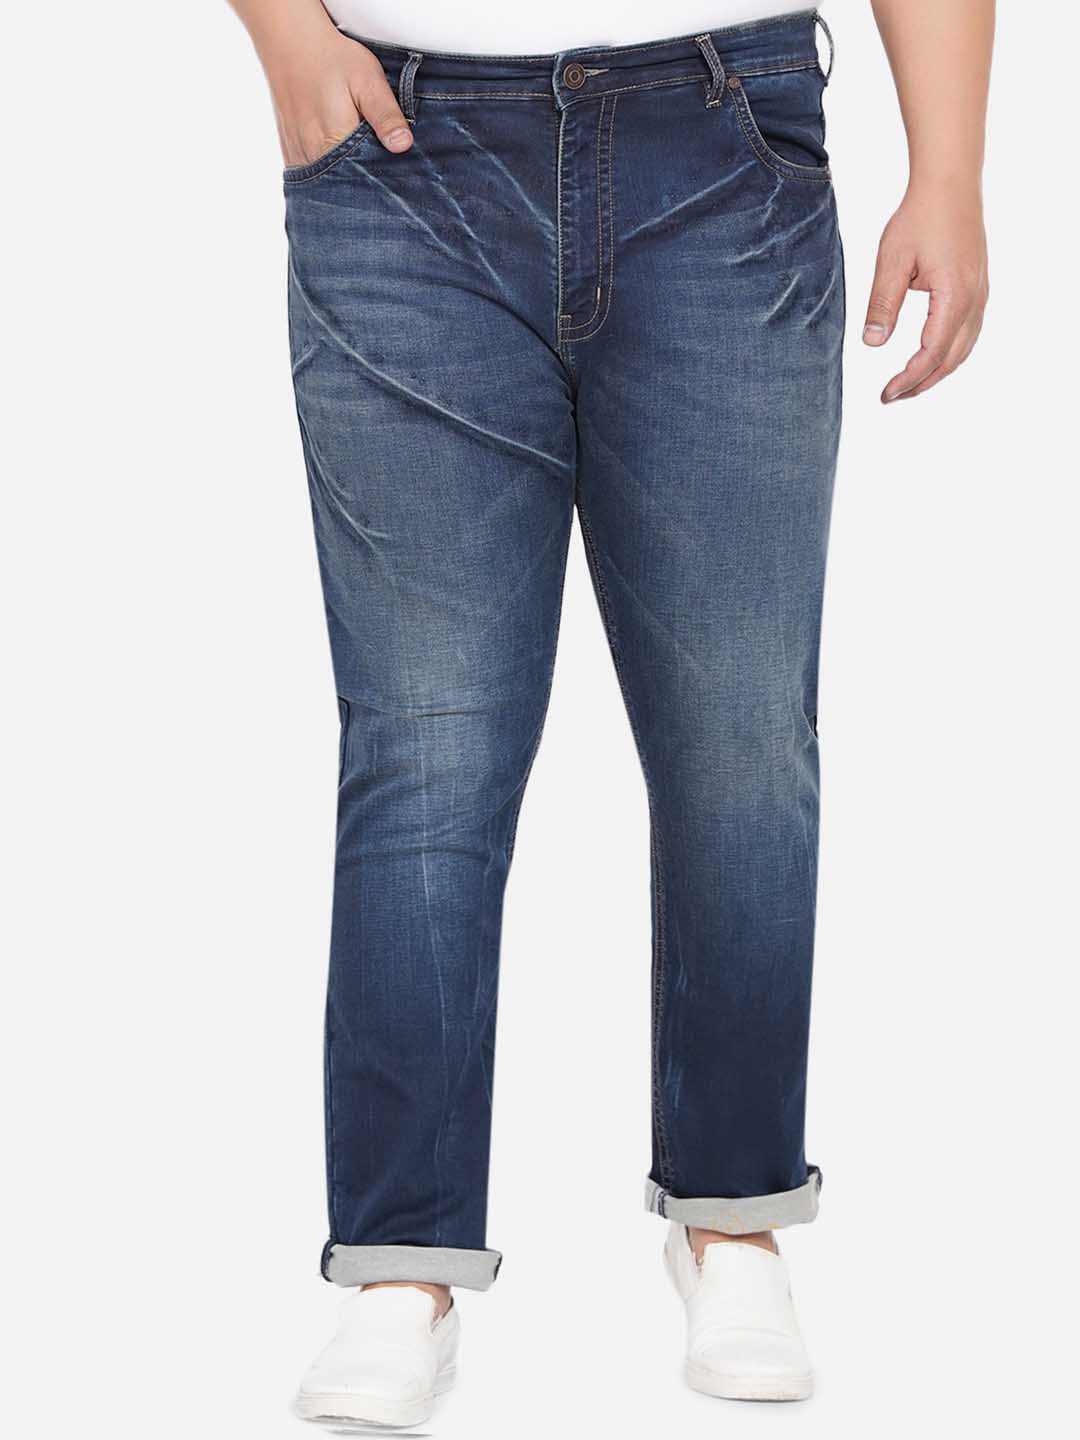 bottomwear/jeans/JPJ12236/jpj12236-6.jpg